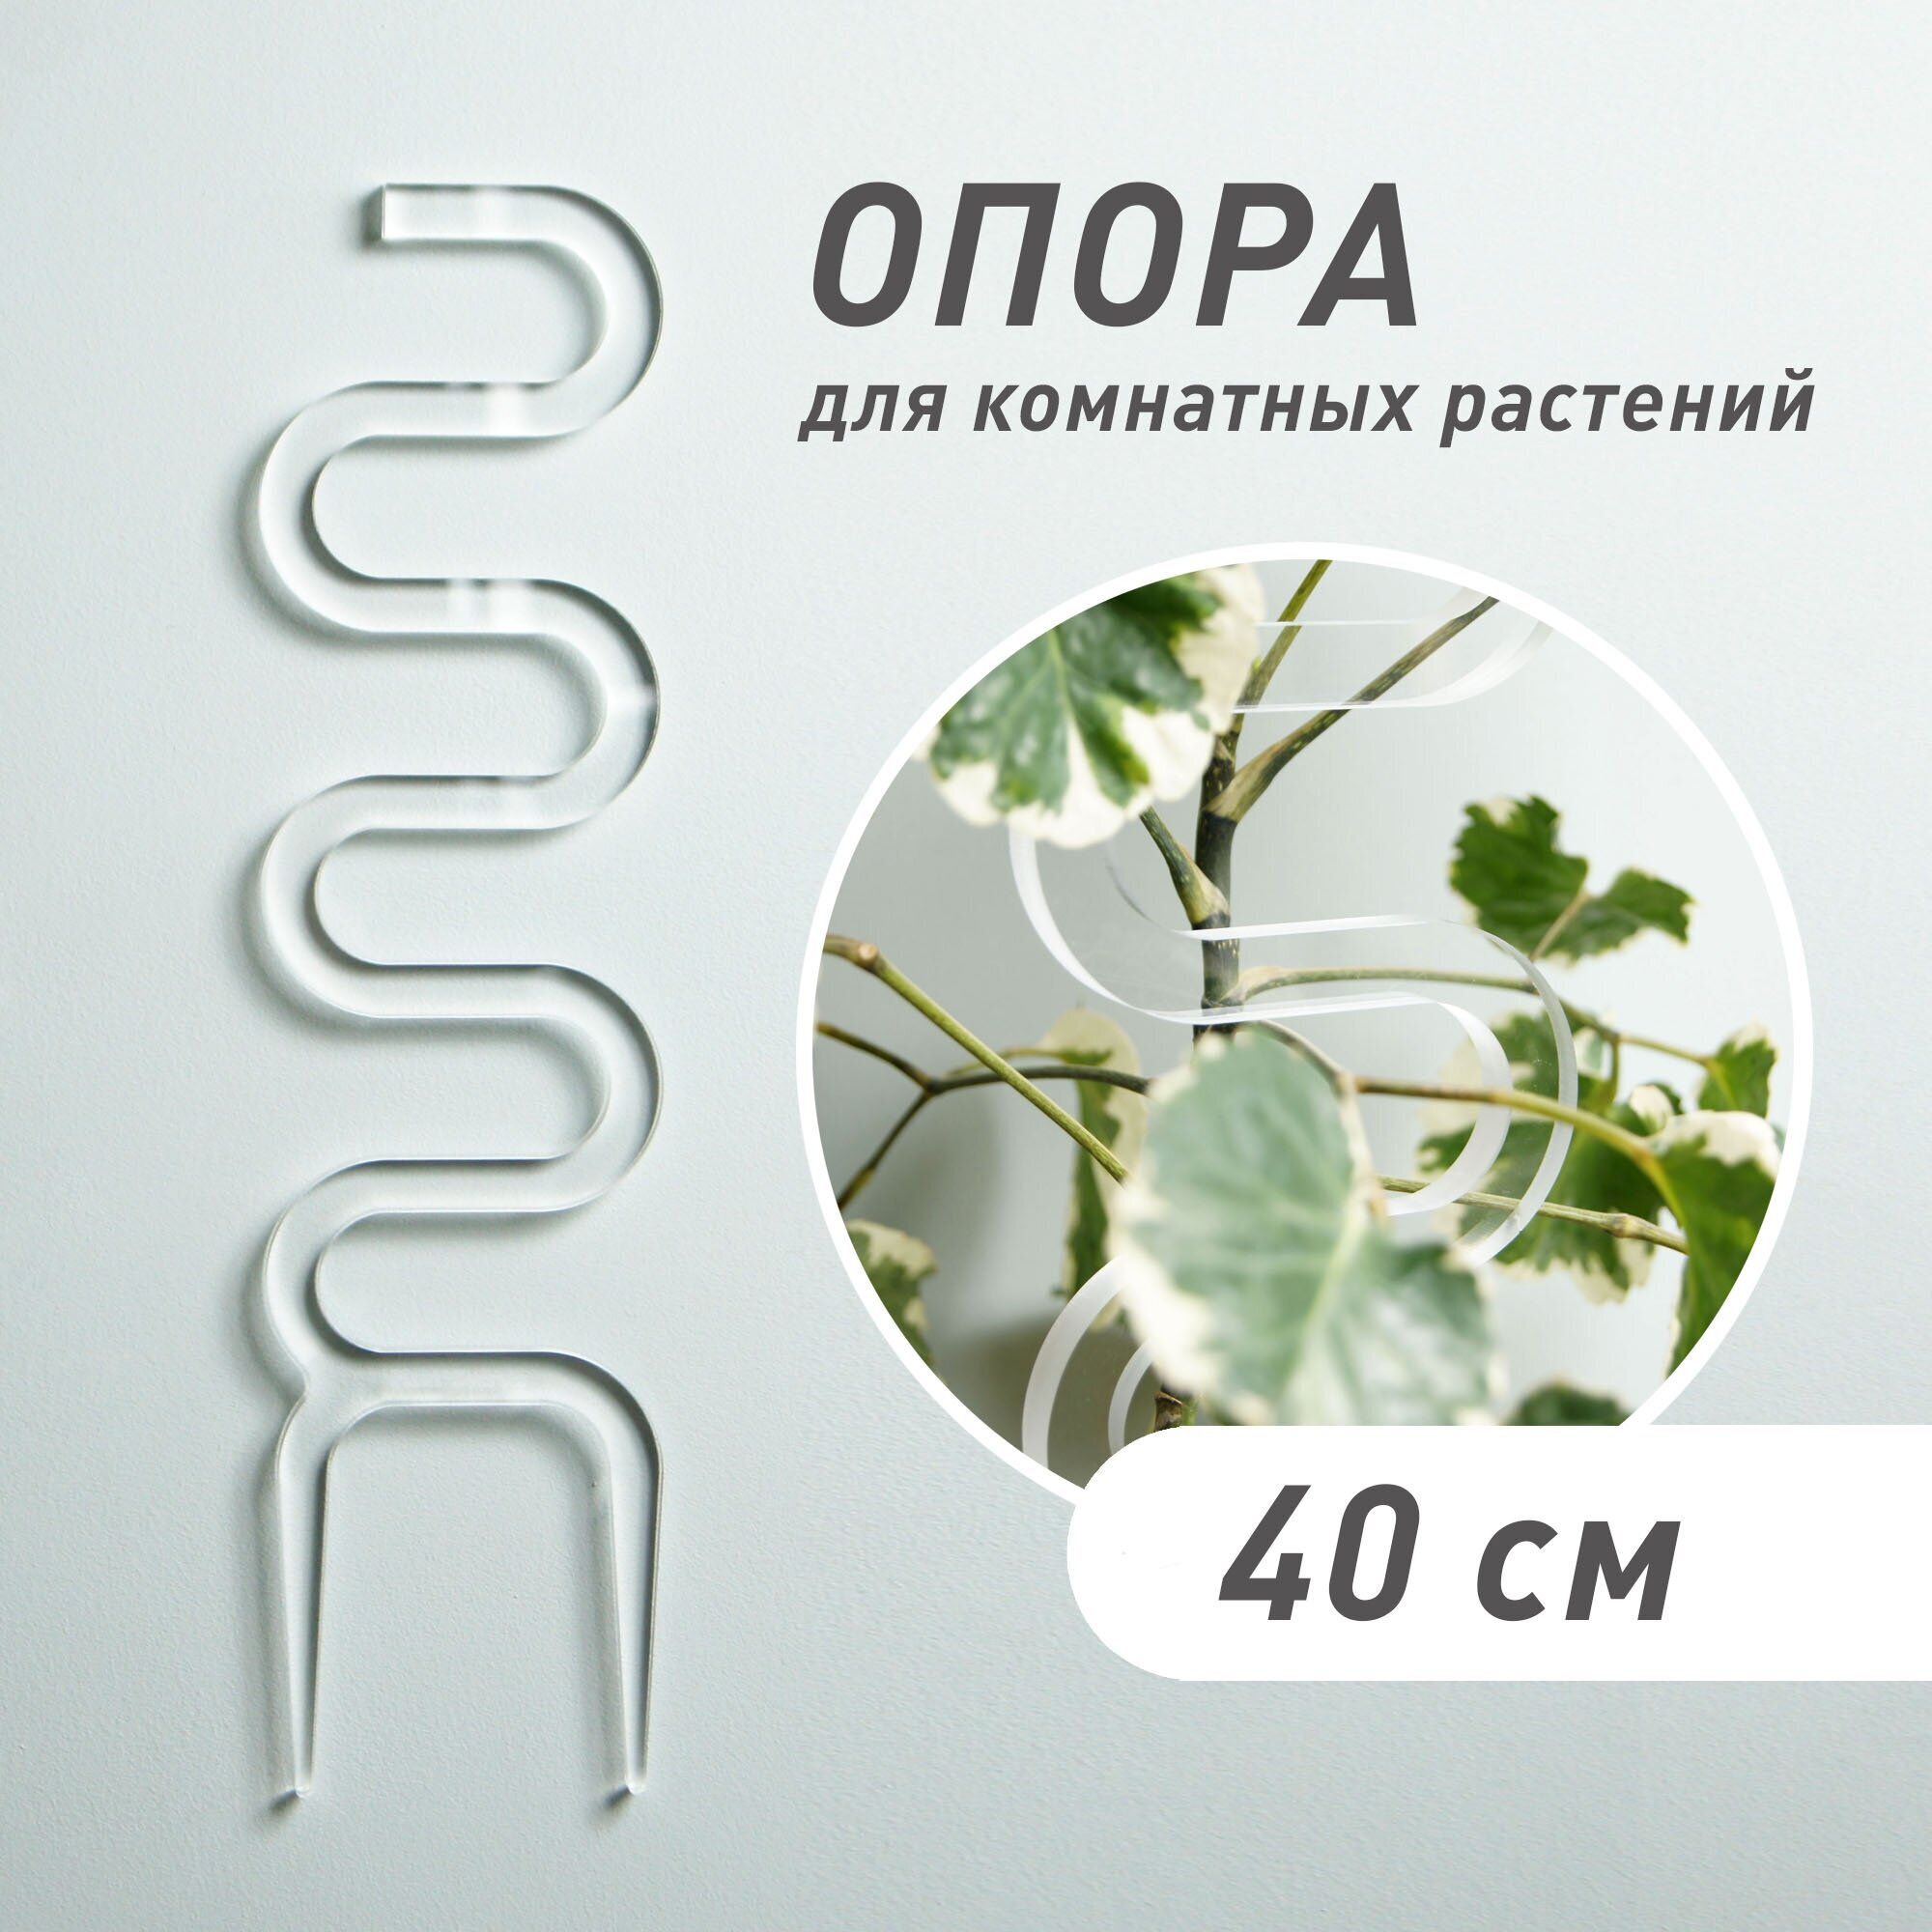 Опора для растений "Cobra", прозрачная, высота 40 см - фотография № 1